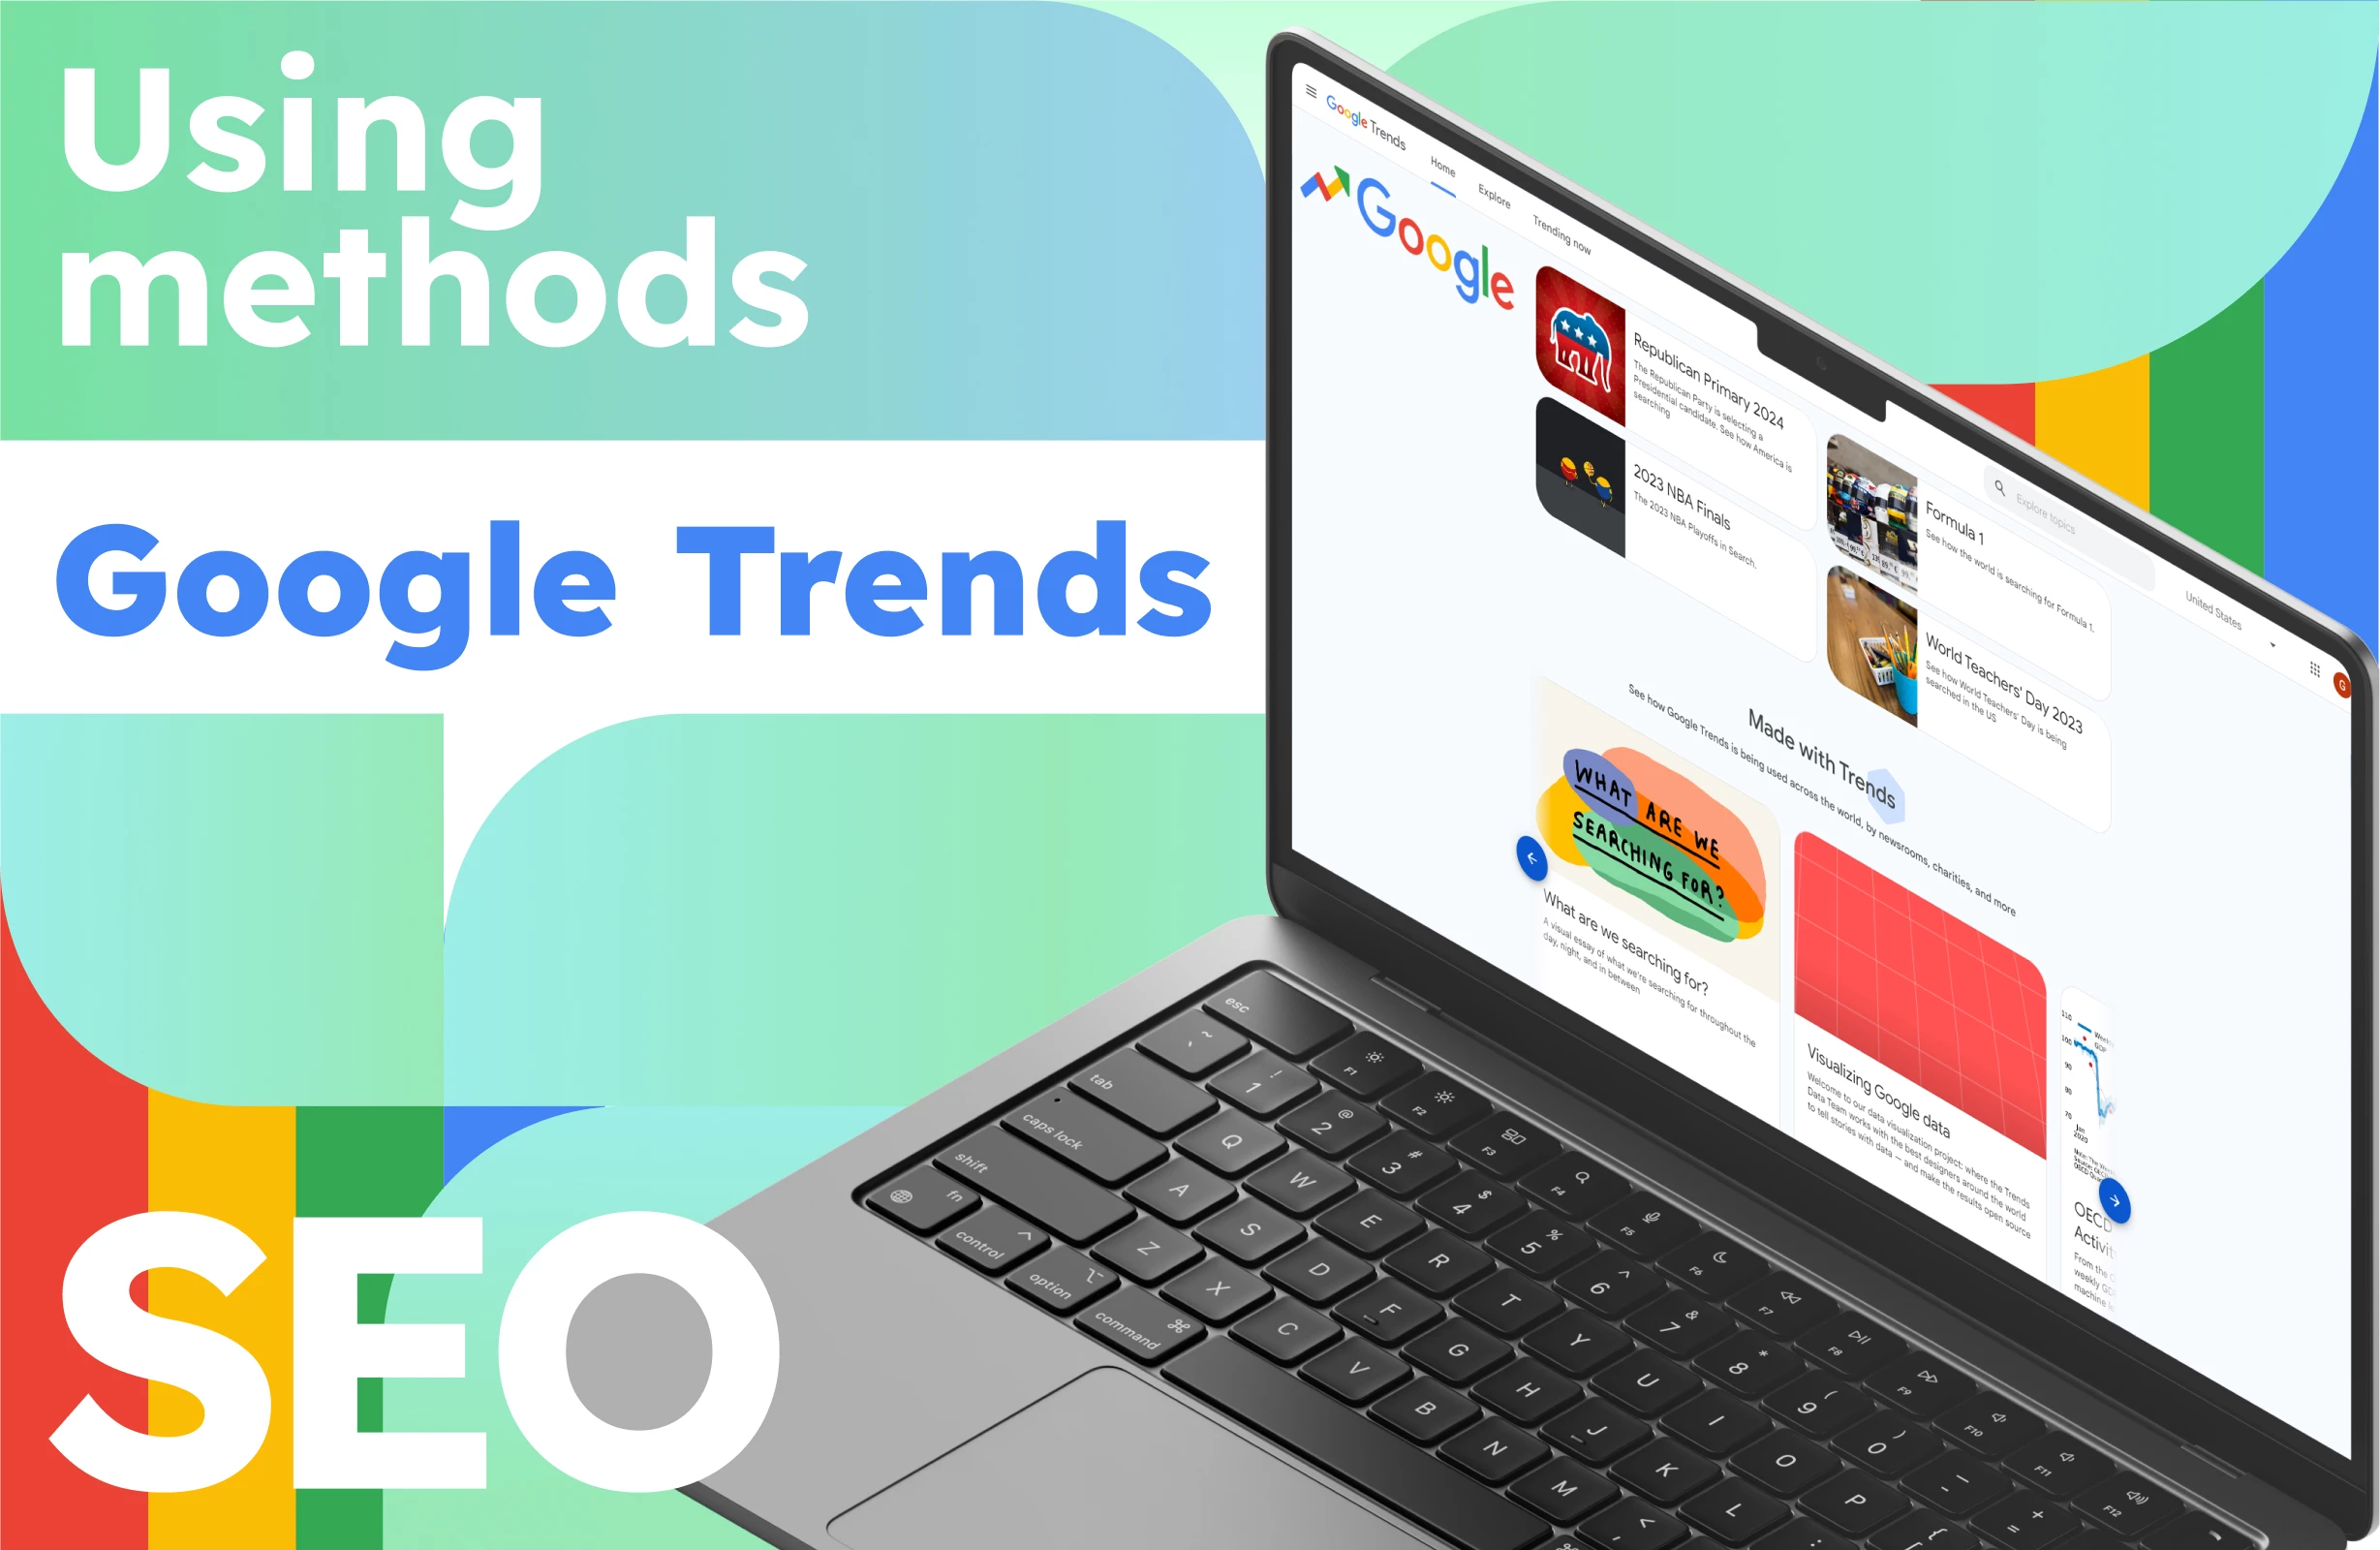 Conas Agus cén fáth Google Trends a úsáid